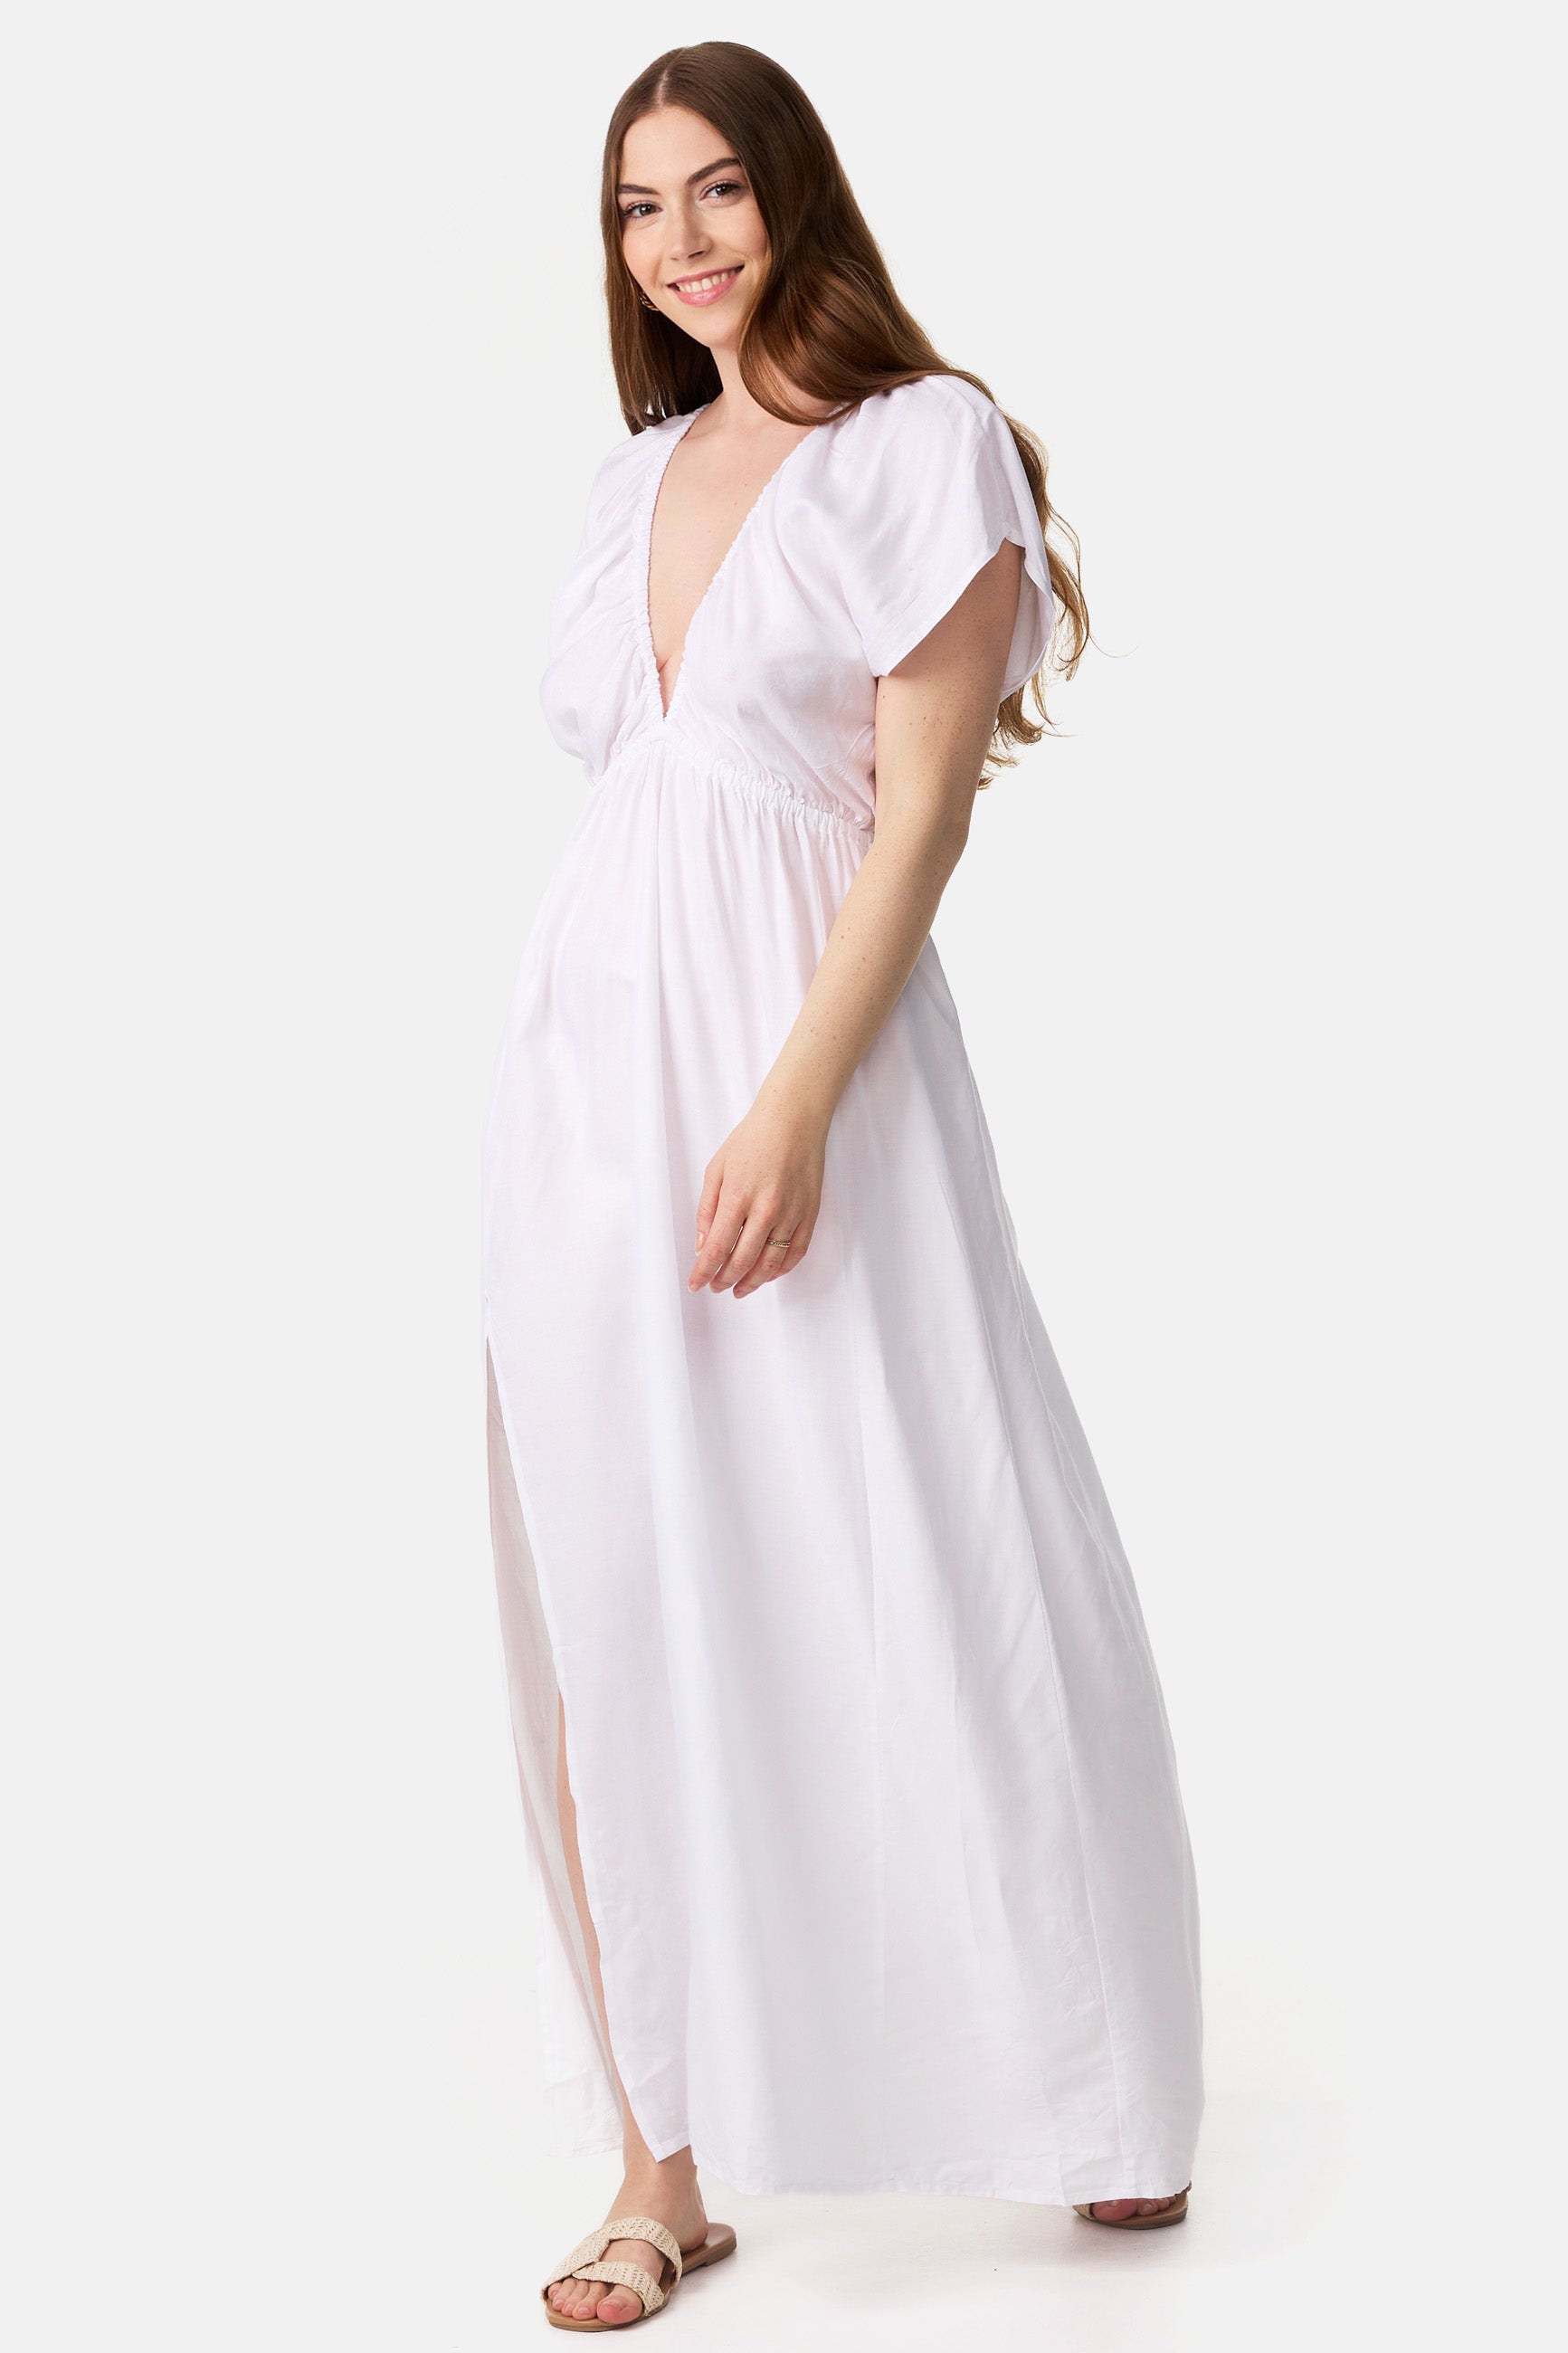 Langes Kleid Weiß